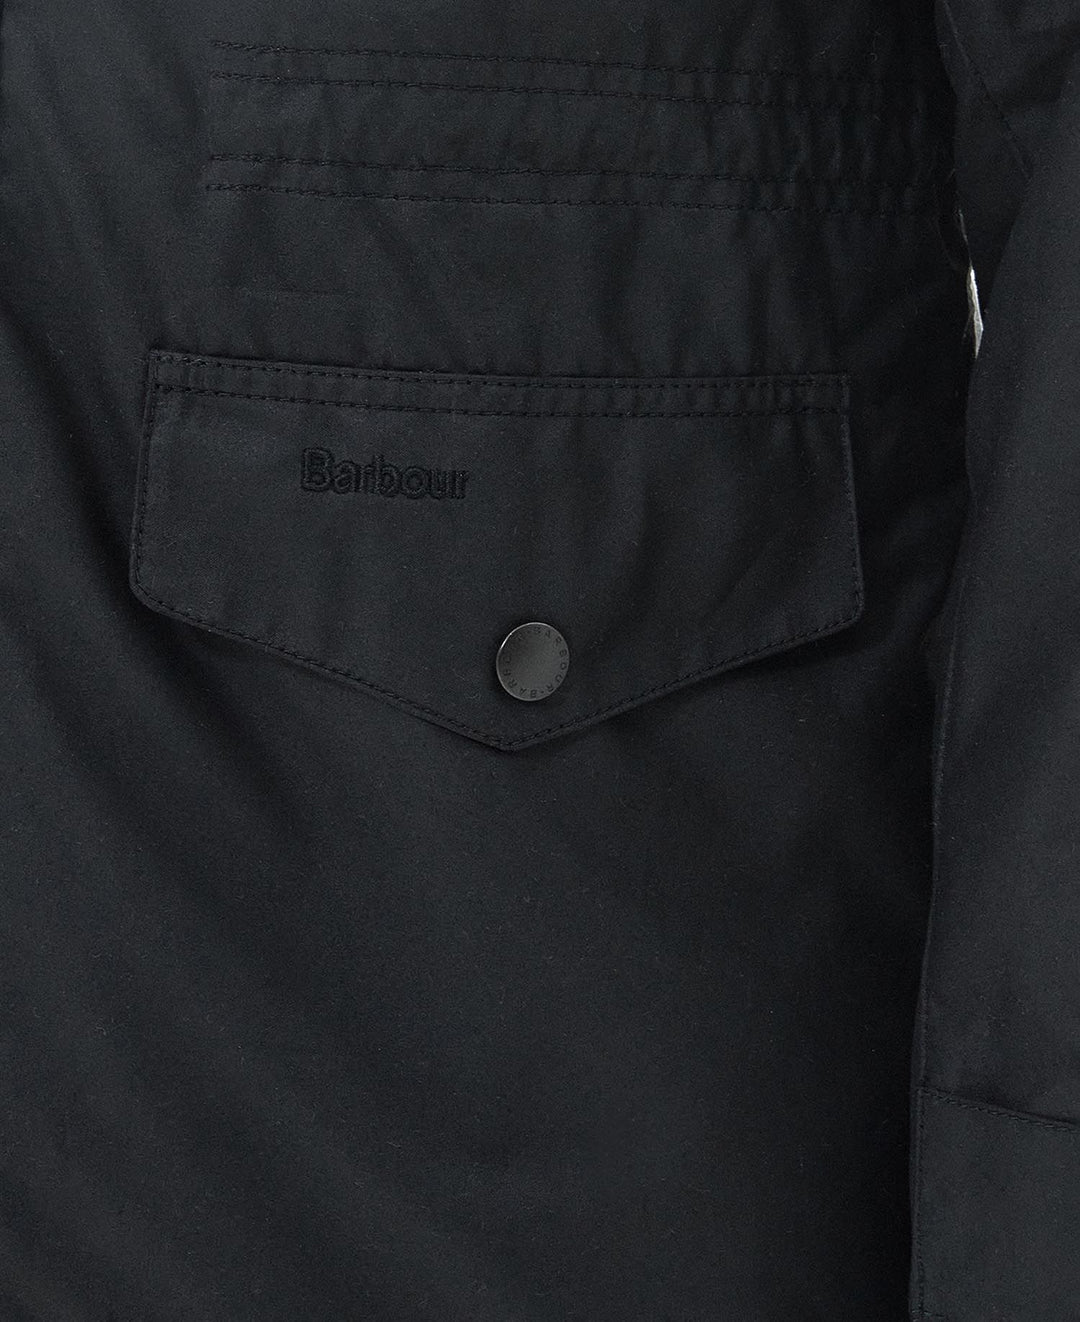 Barbour Sapper Wax Jacket/Jakna MWX0020